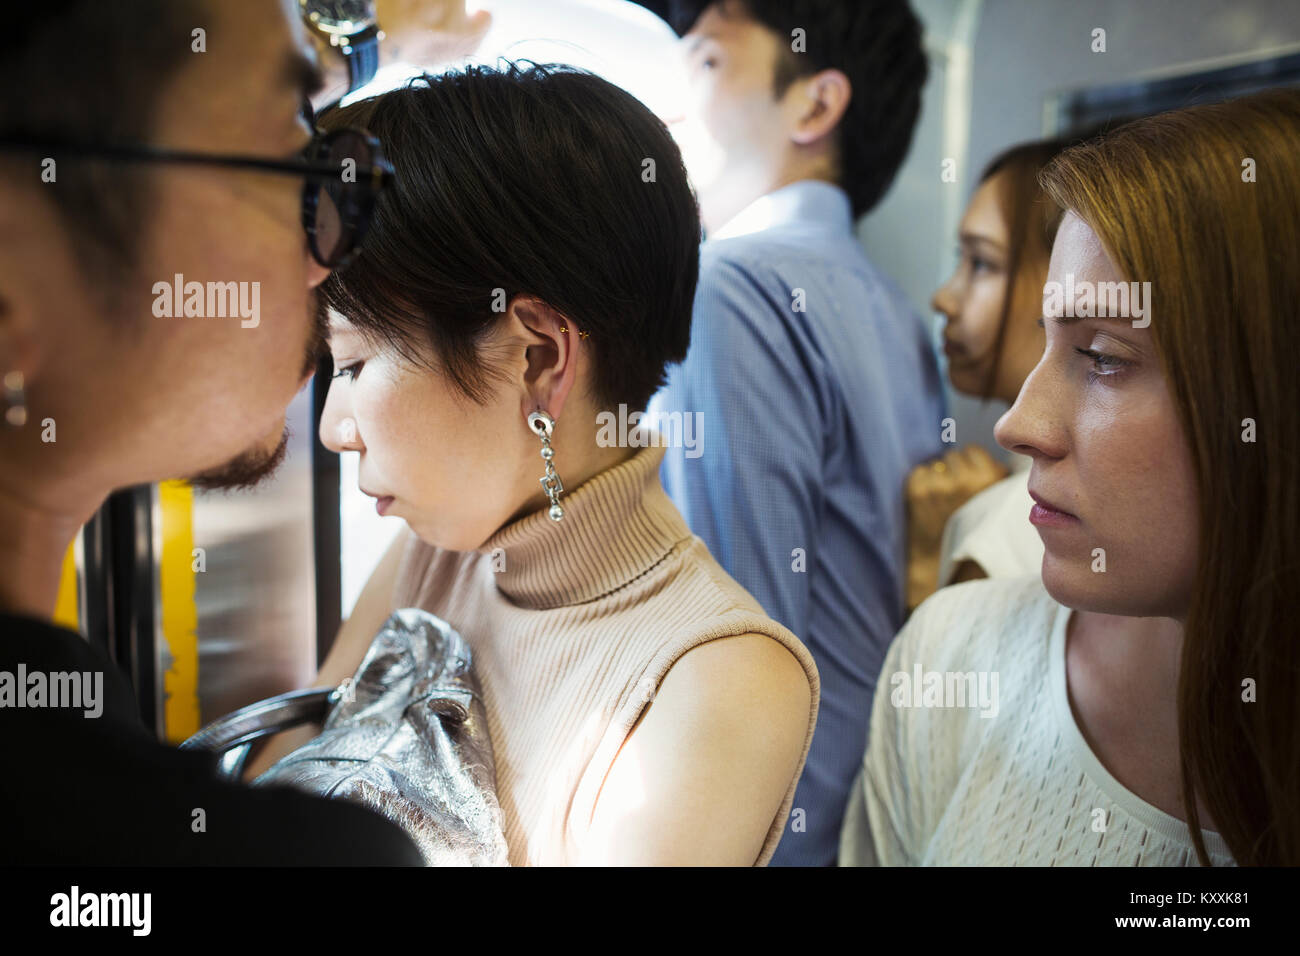 Kleine Gruppe von Menschen, die in einer U-Bahn, Tokio Pendler. Stockfoto